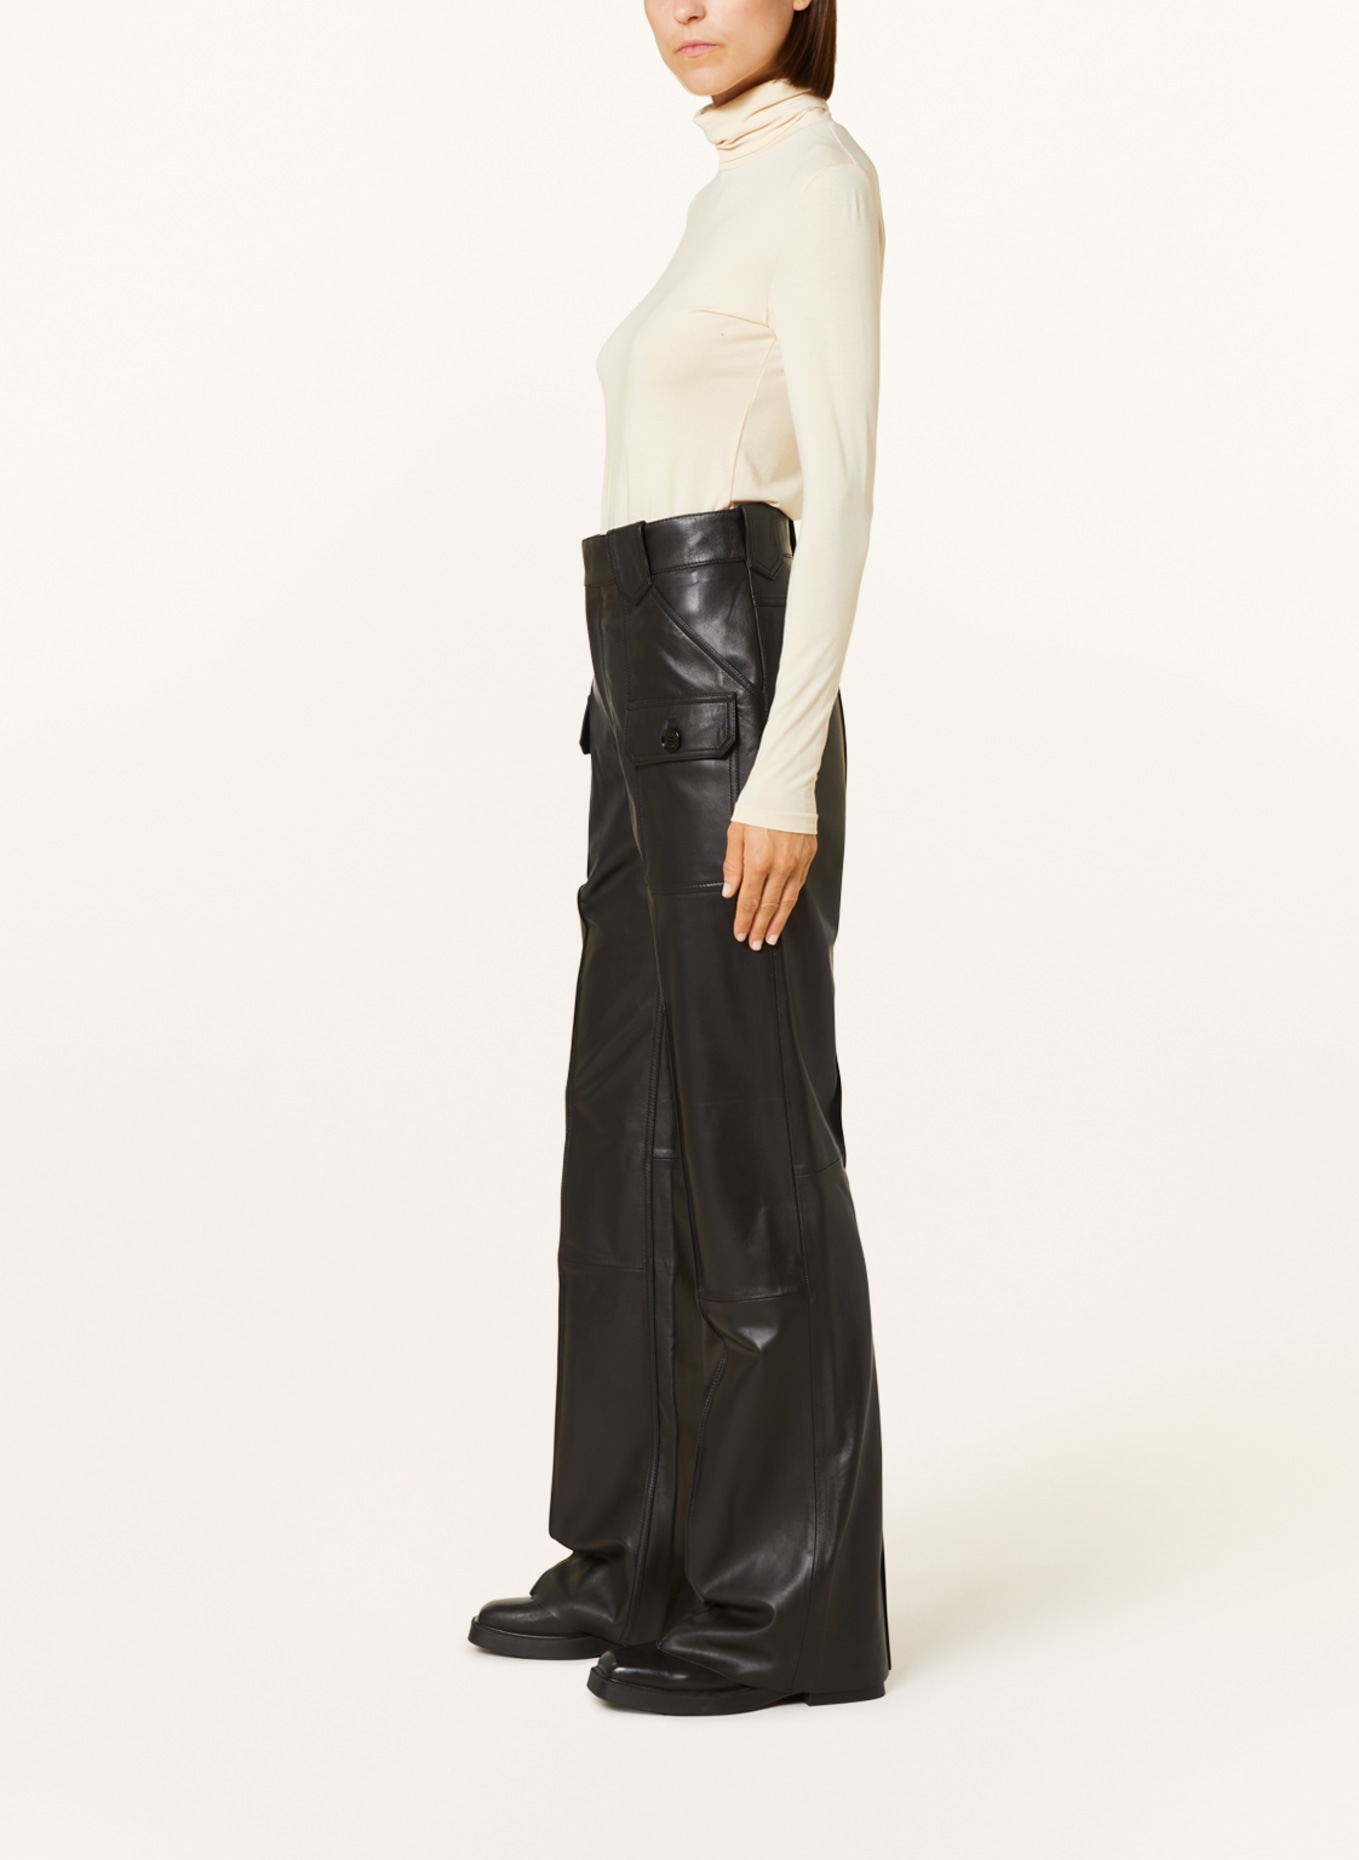 BELSTAFF Cargo pants HAZEL made of leather, Color: BLACK (Image 4)